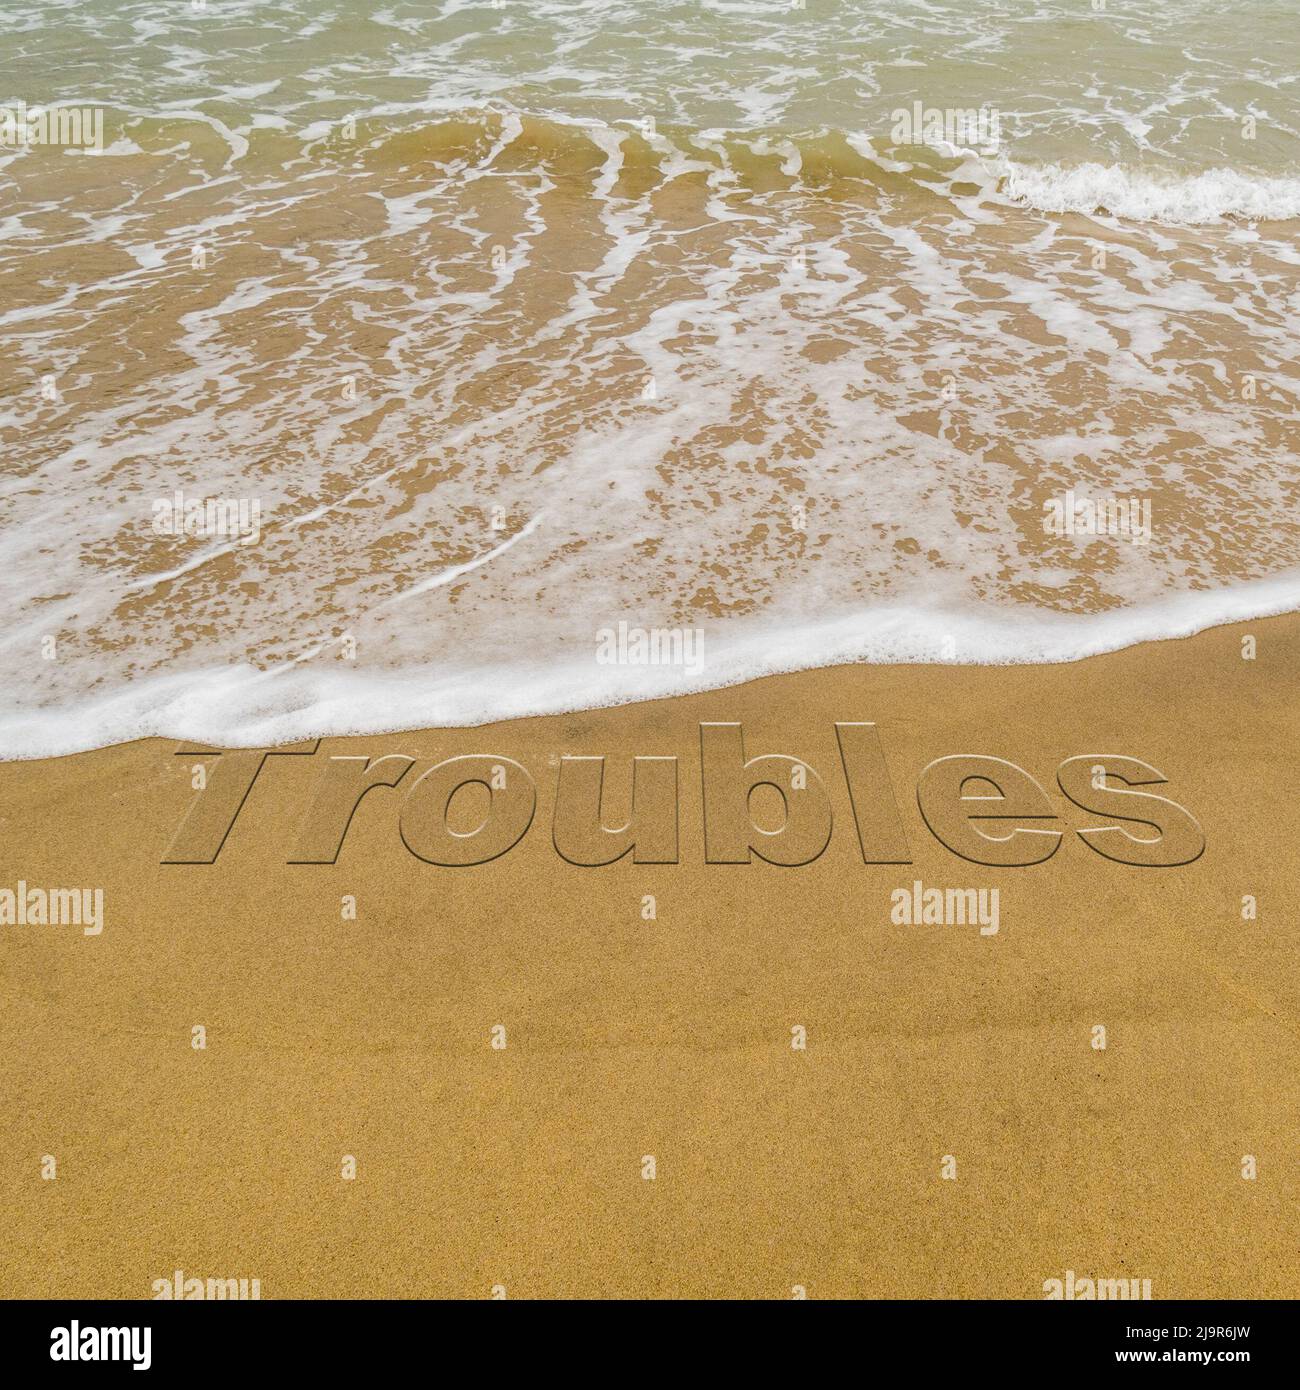 Concepto de imagen - para ilustrar el lavado del estrés tomando unas vacaciones como olas en una playa de arena lavar la palabra 'problemas'. Foto de stock